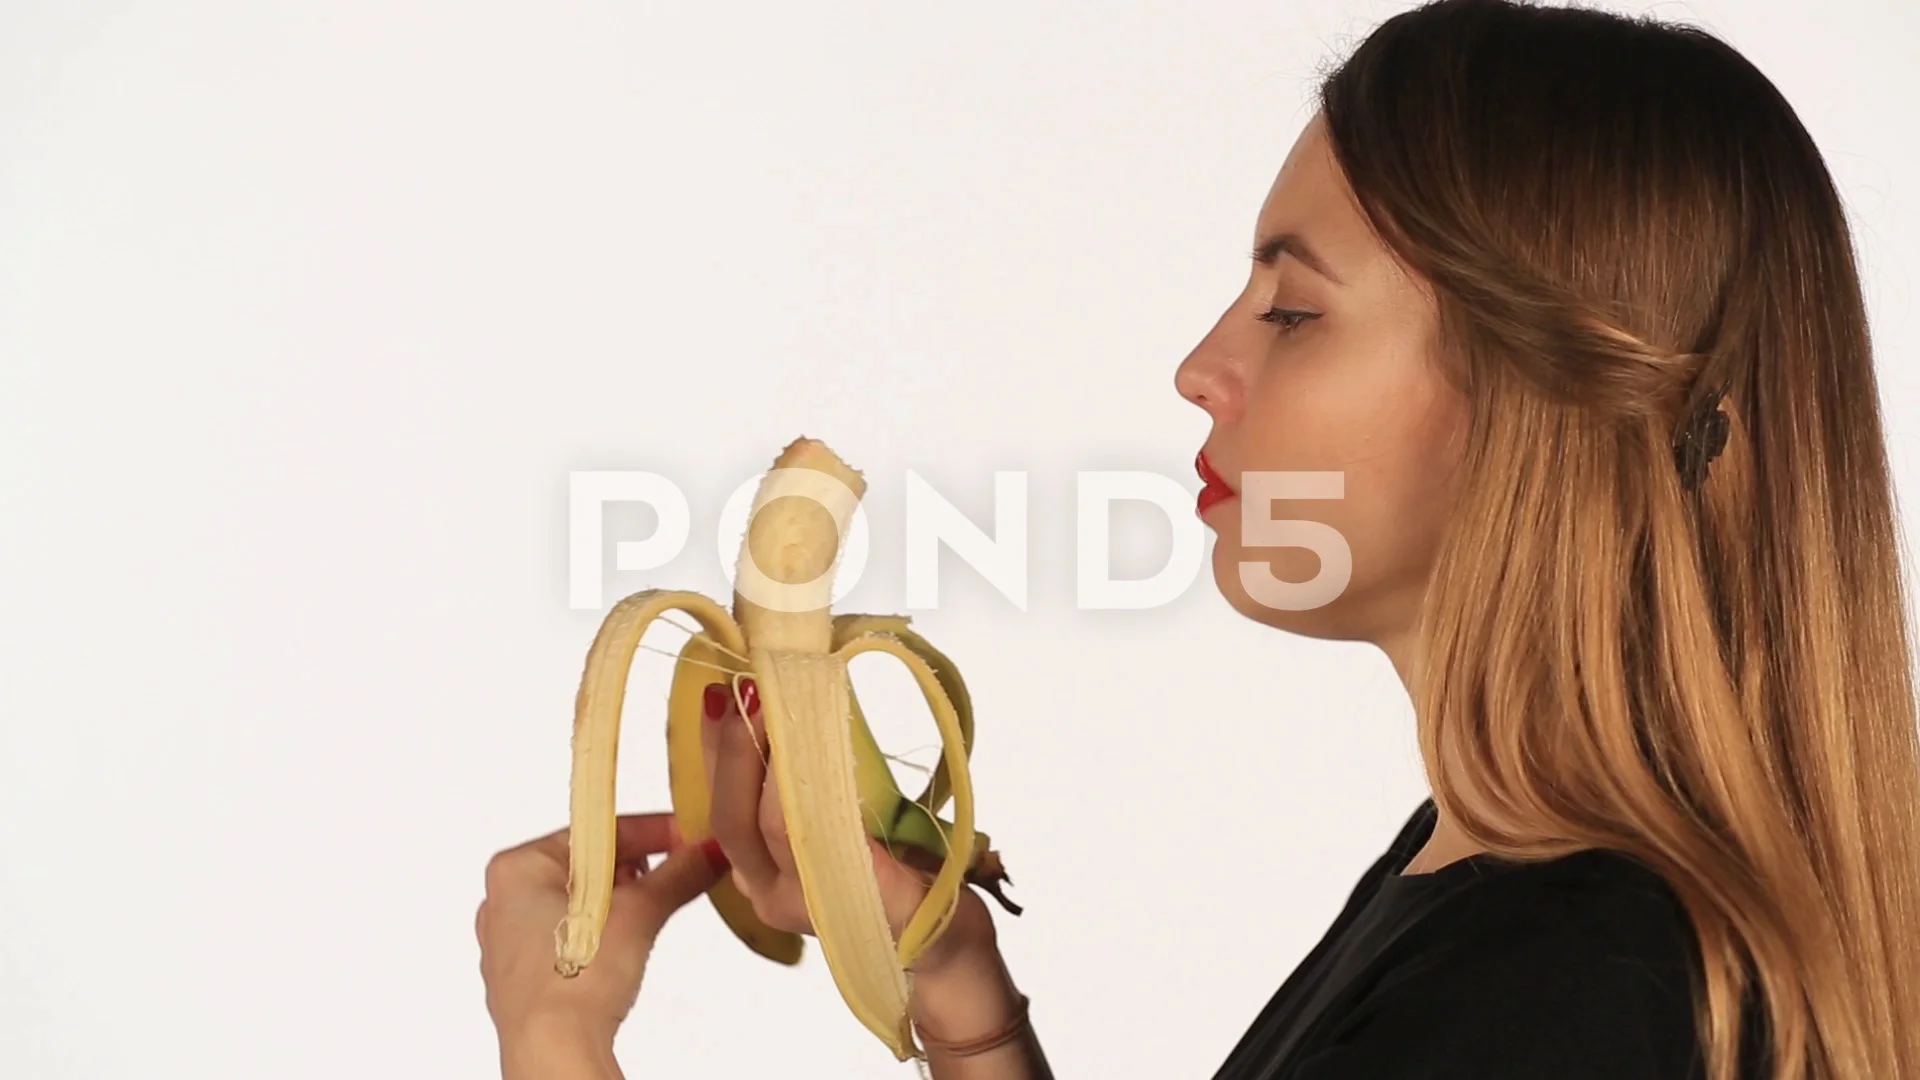 girl eating banana